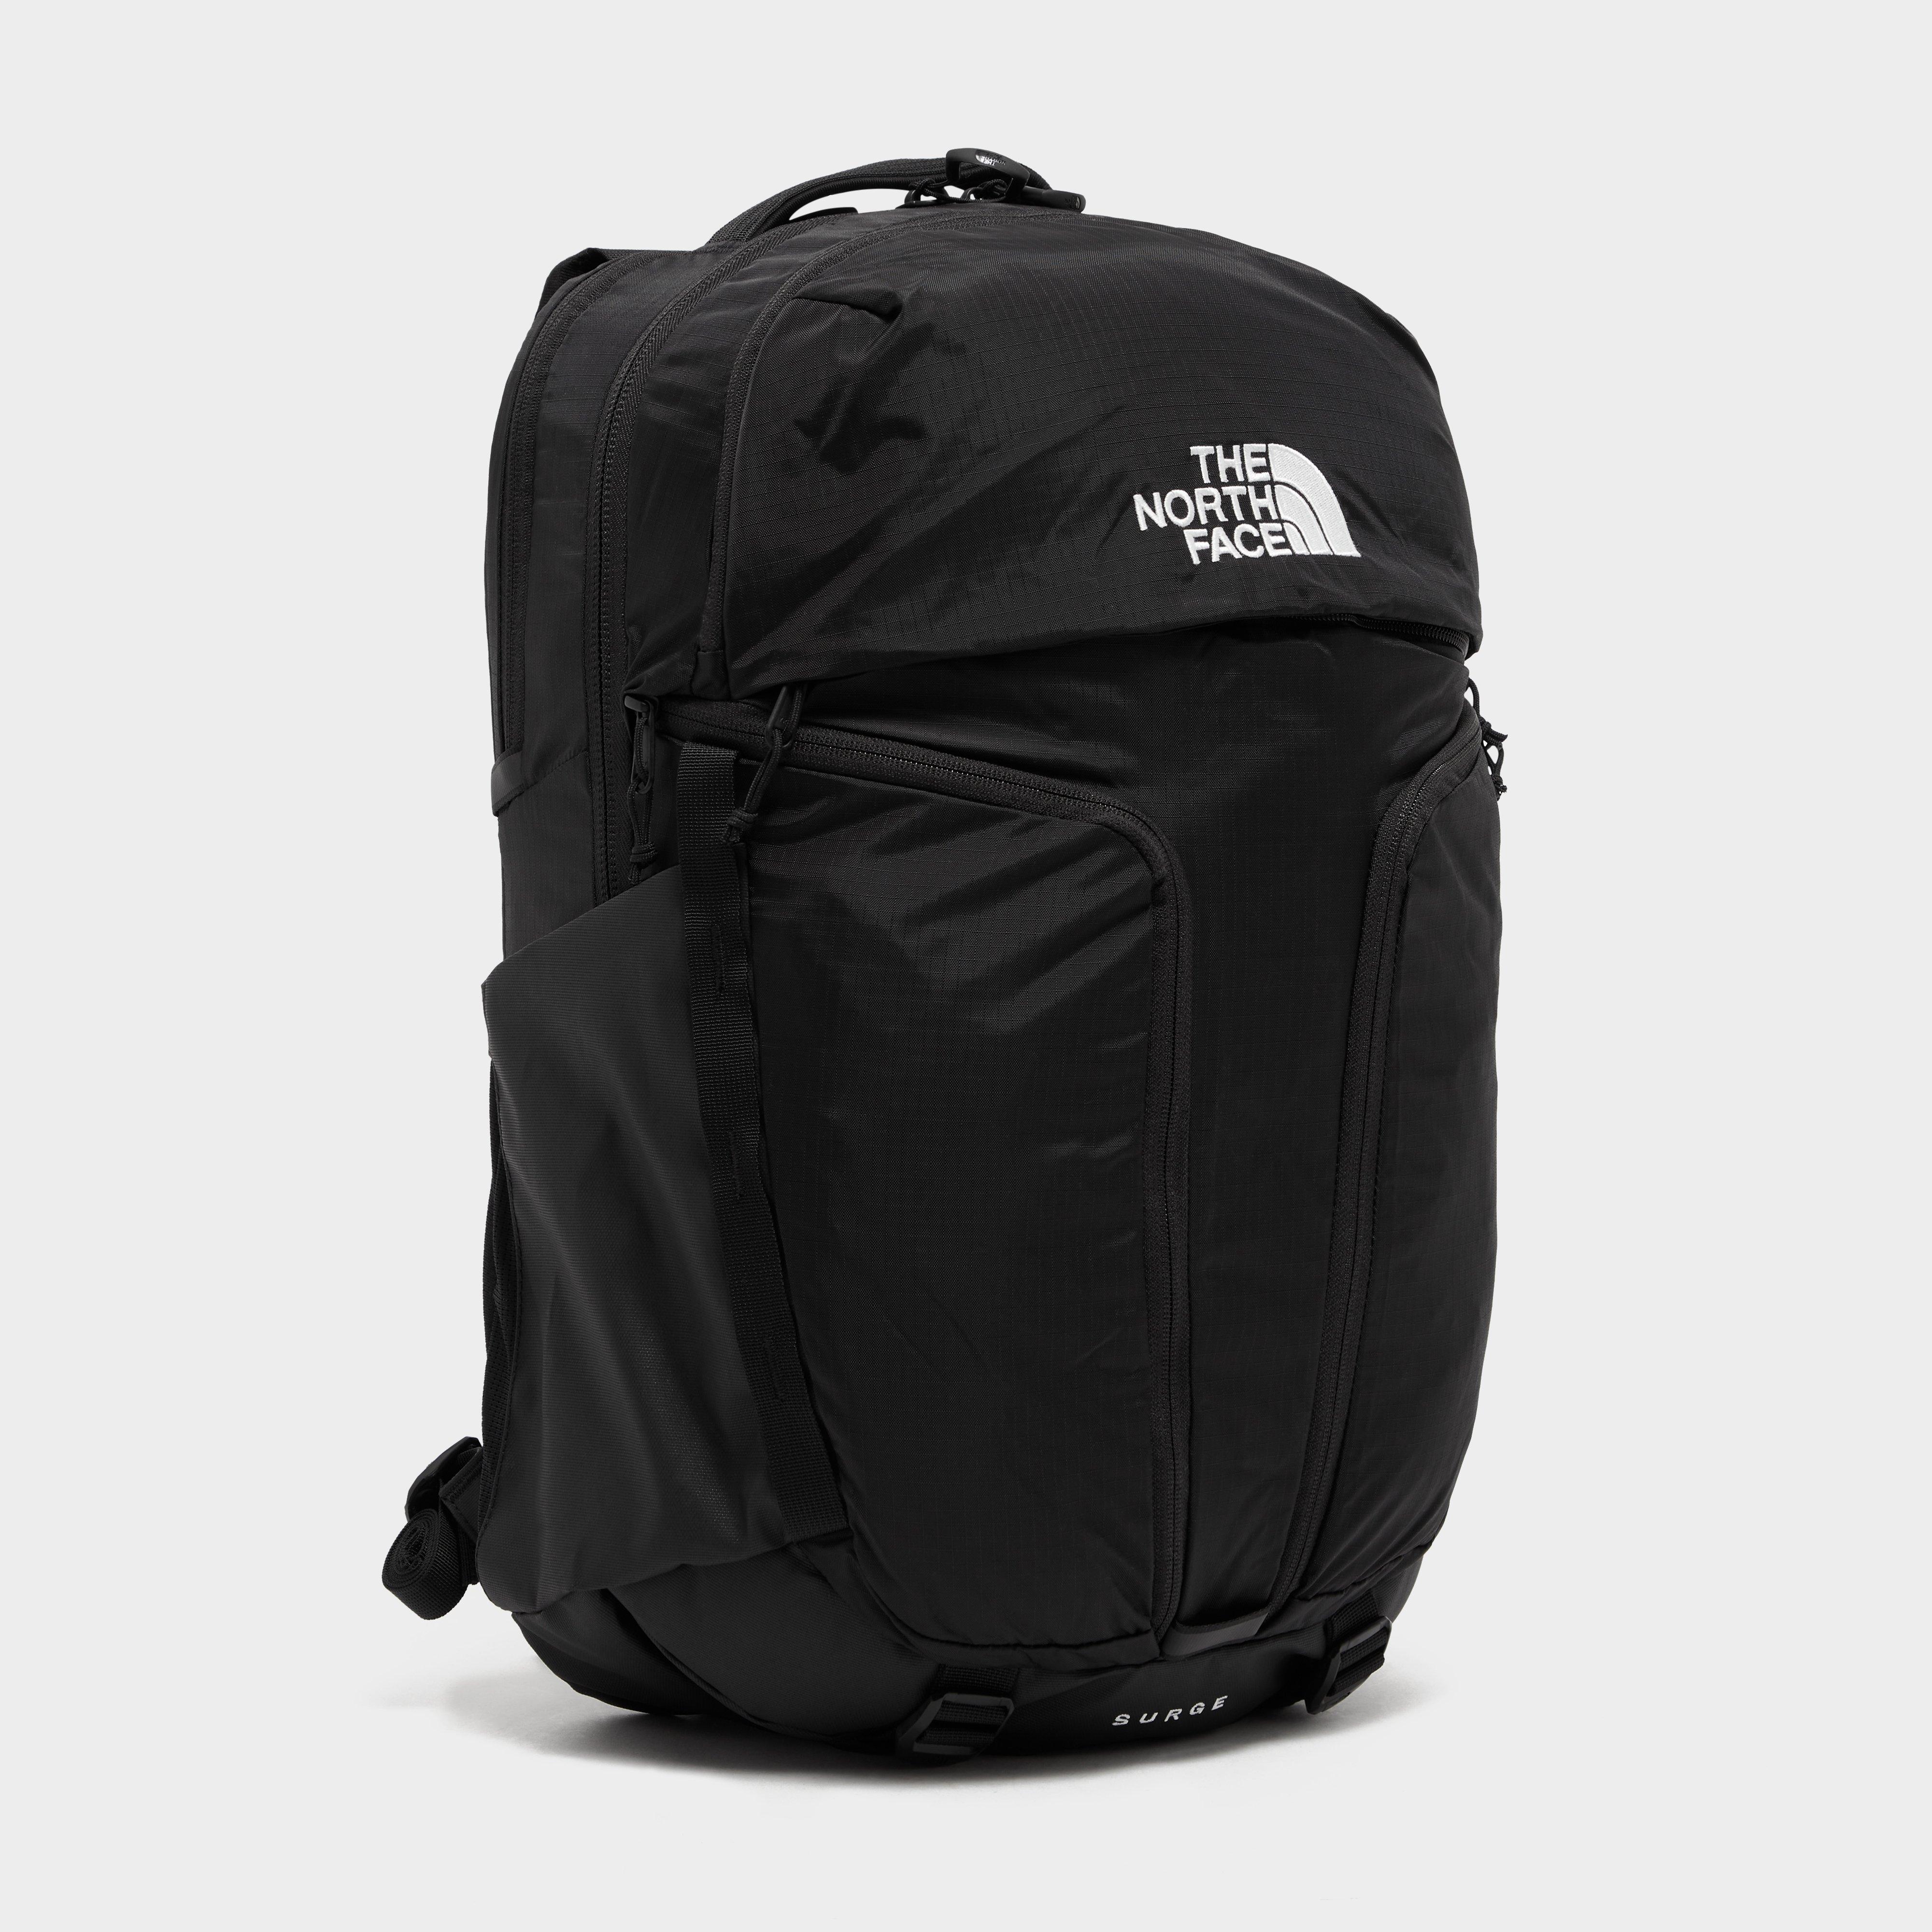 The North Face Surge Backpack - Black/blk  Black/blk